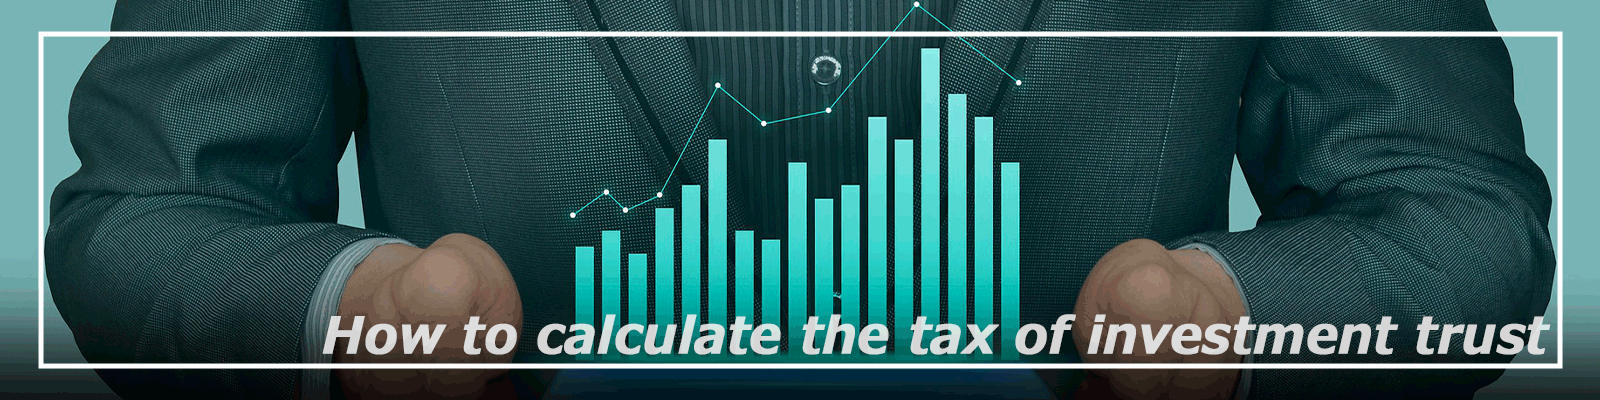 投資信託の税金の計算方法